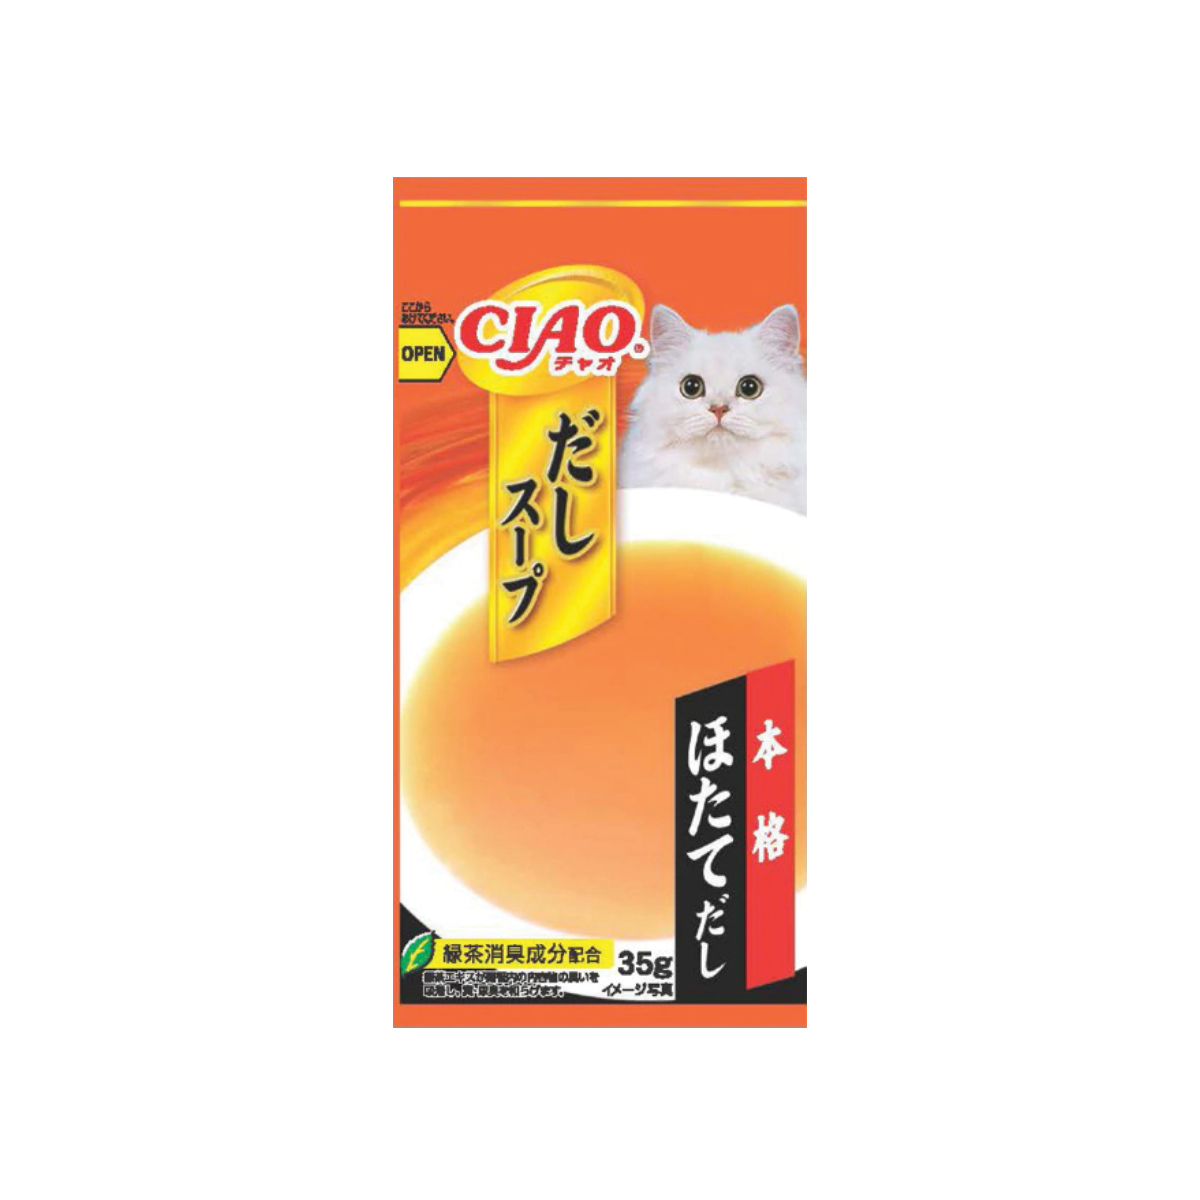 CIAO Dashi Soup Line Pouch Scallop Flavor เชาว์ ดาชิ ซุป ไลน์ เพาช์ รสหอยเชลล์ ขนาด 35 กรัม (4 ซอง)